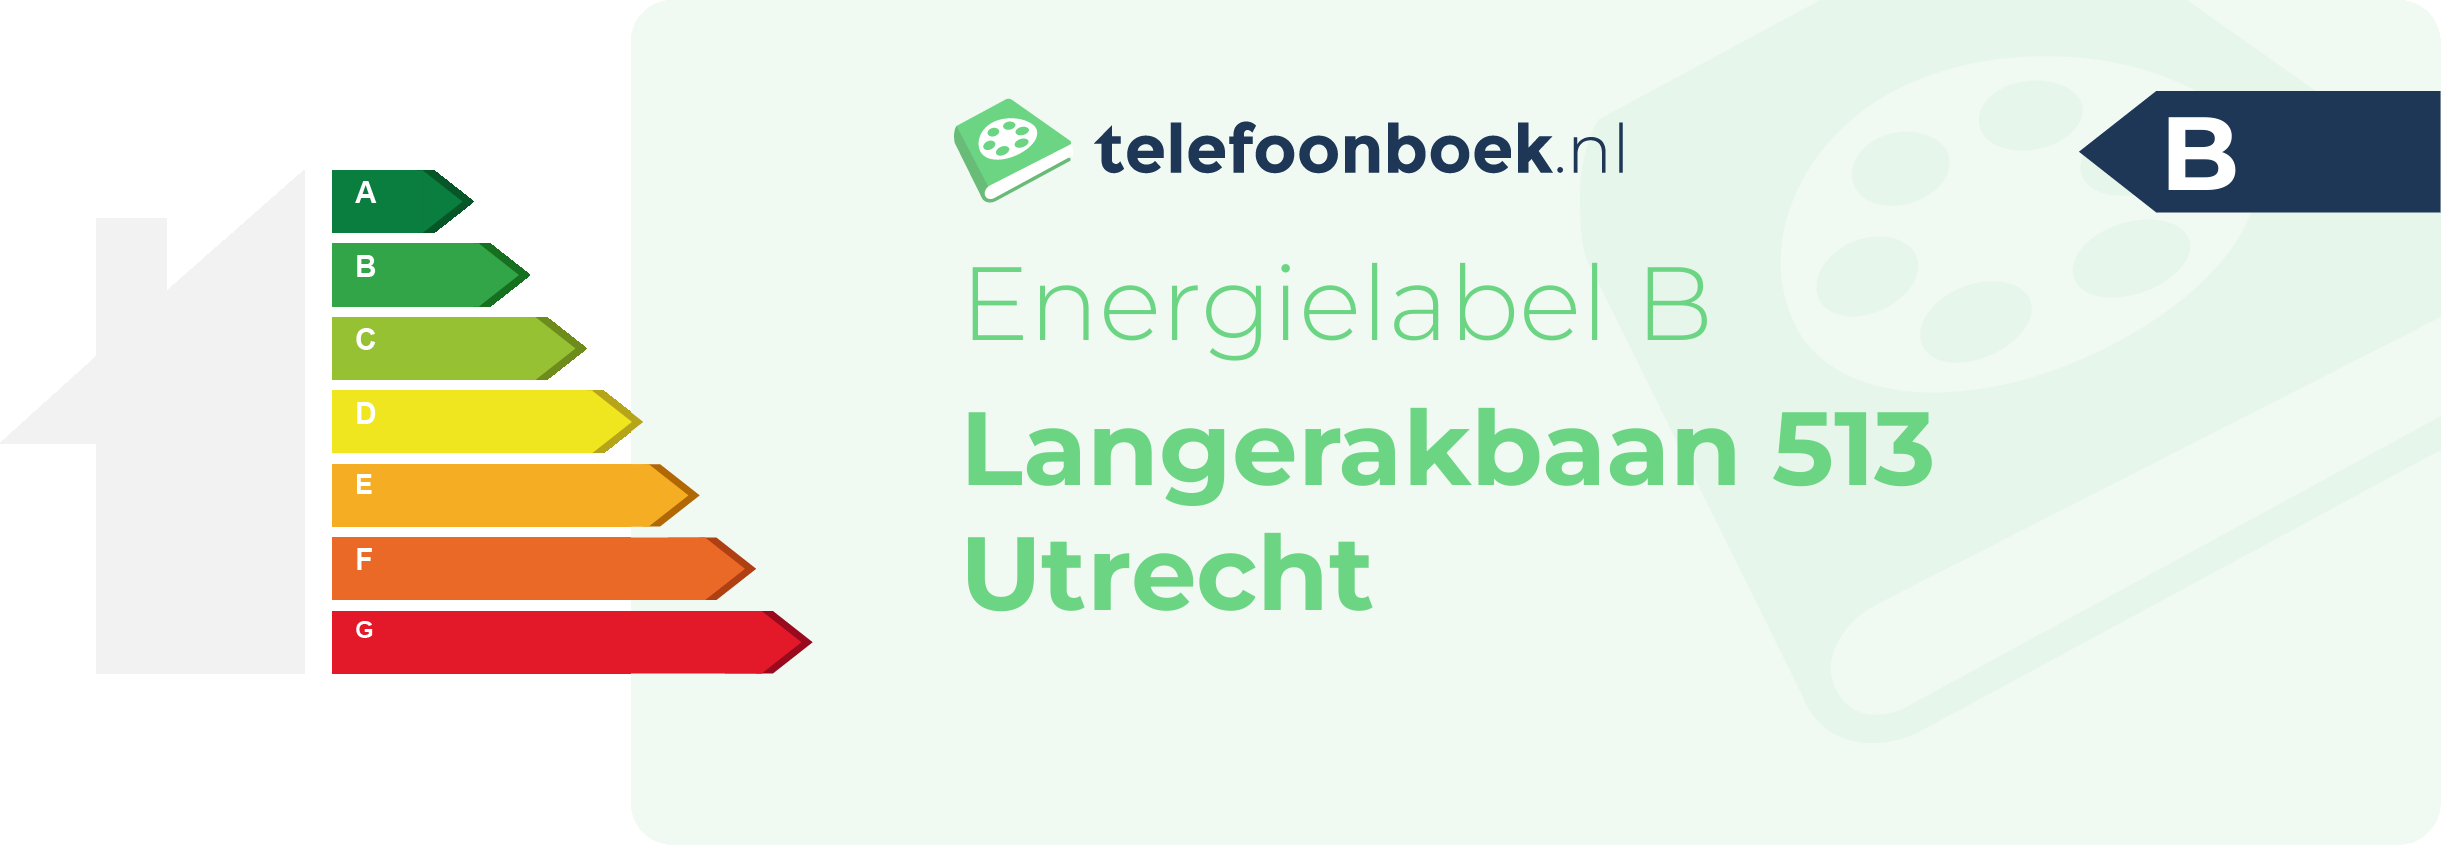 Energielabel Langerakbaan 513 Utrecht